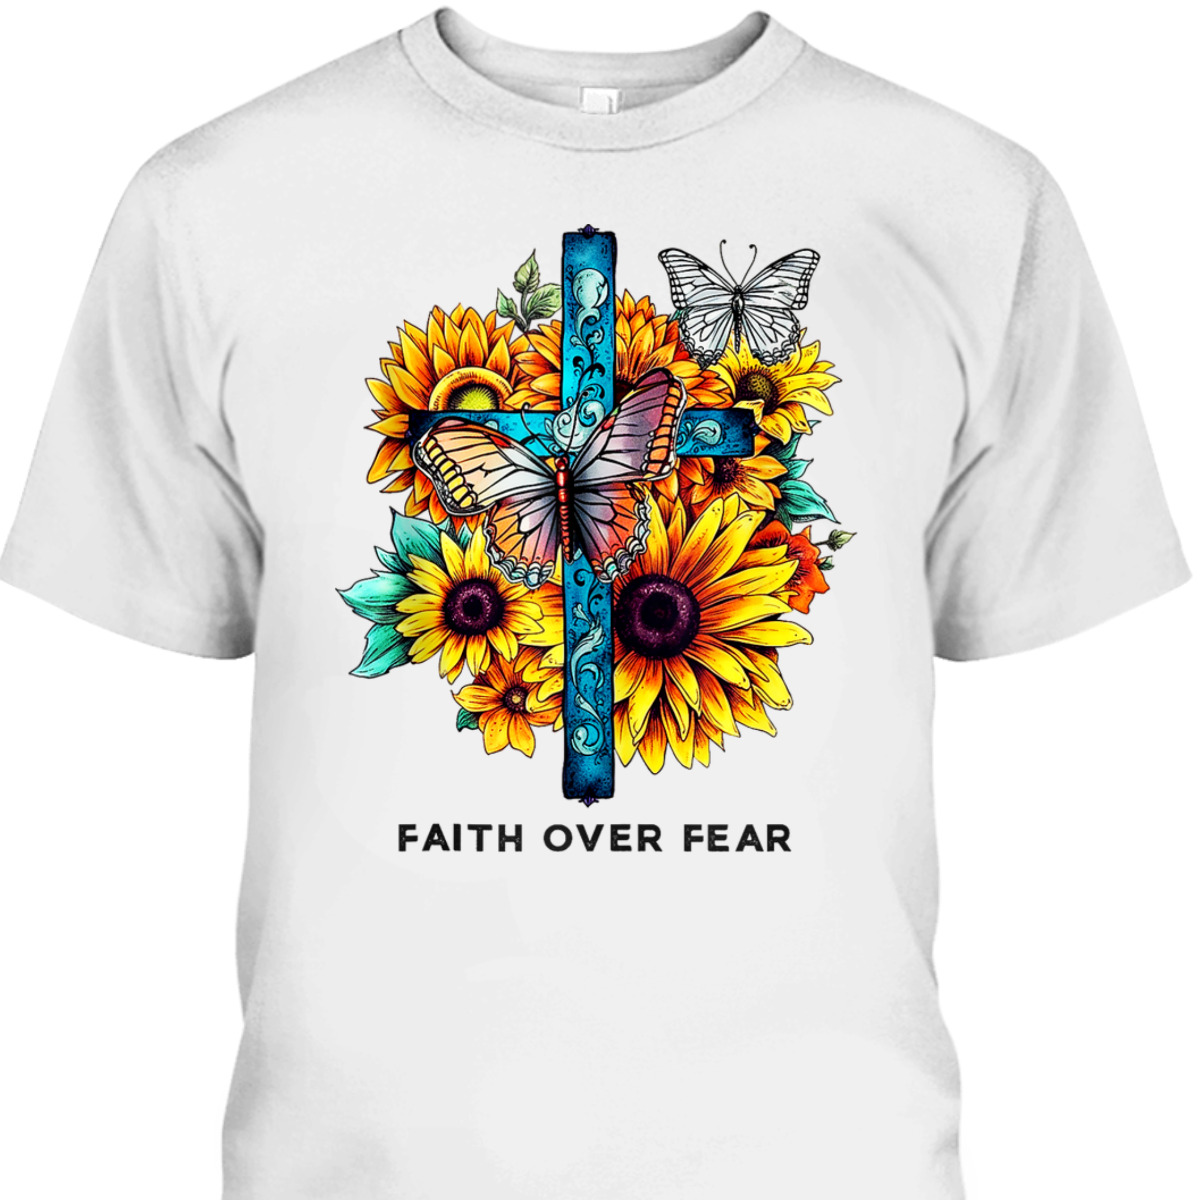 Floral Cross Christian Faith Over Fear Religious Bible Verse T-Shirt Butterflies